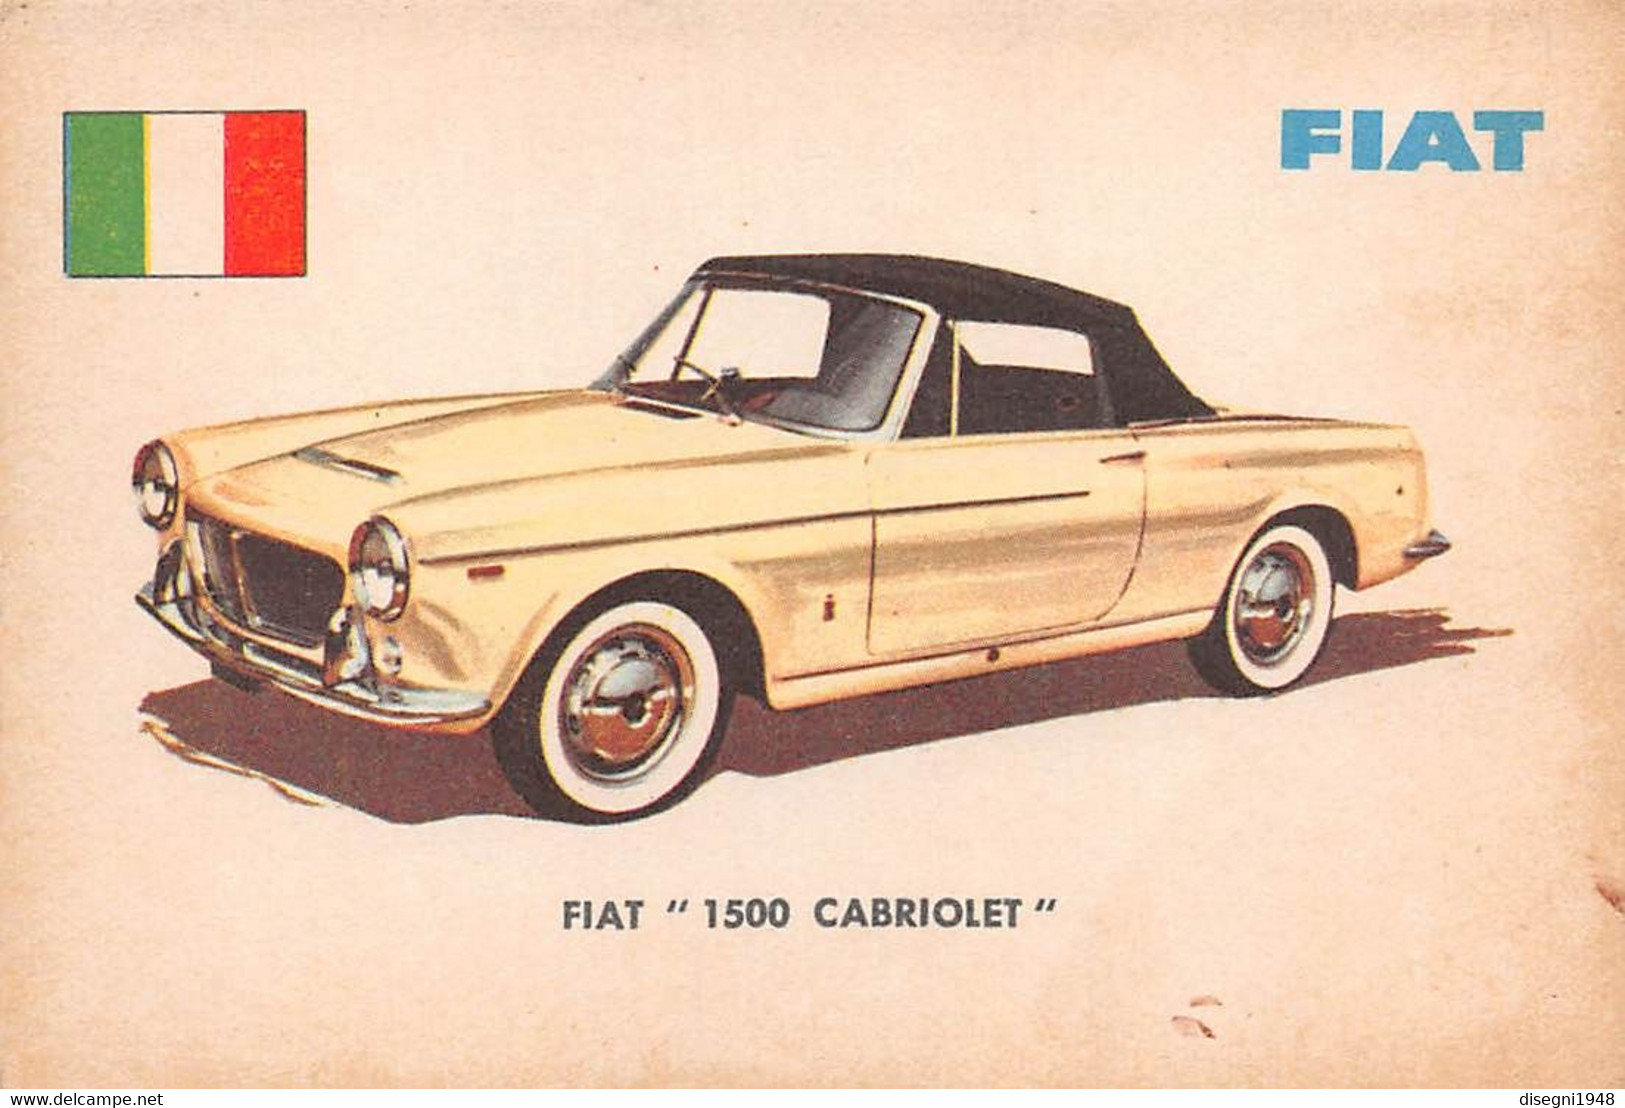 11925 "FIAT 1500 CABRIOLET 18 - AUTO INTERNATIONAL PARADE - SIDAM TORINO - 1961" FIGURINA CARTONATA ORIG. - Auto & Verkehr